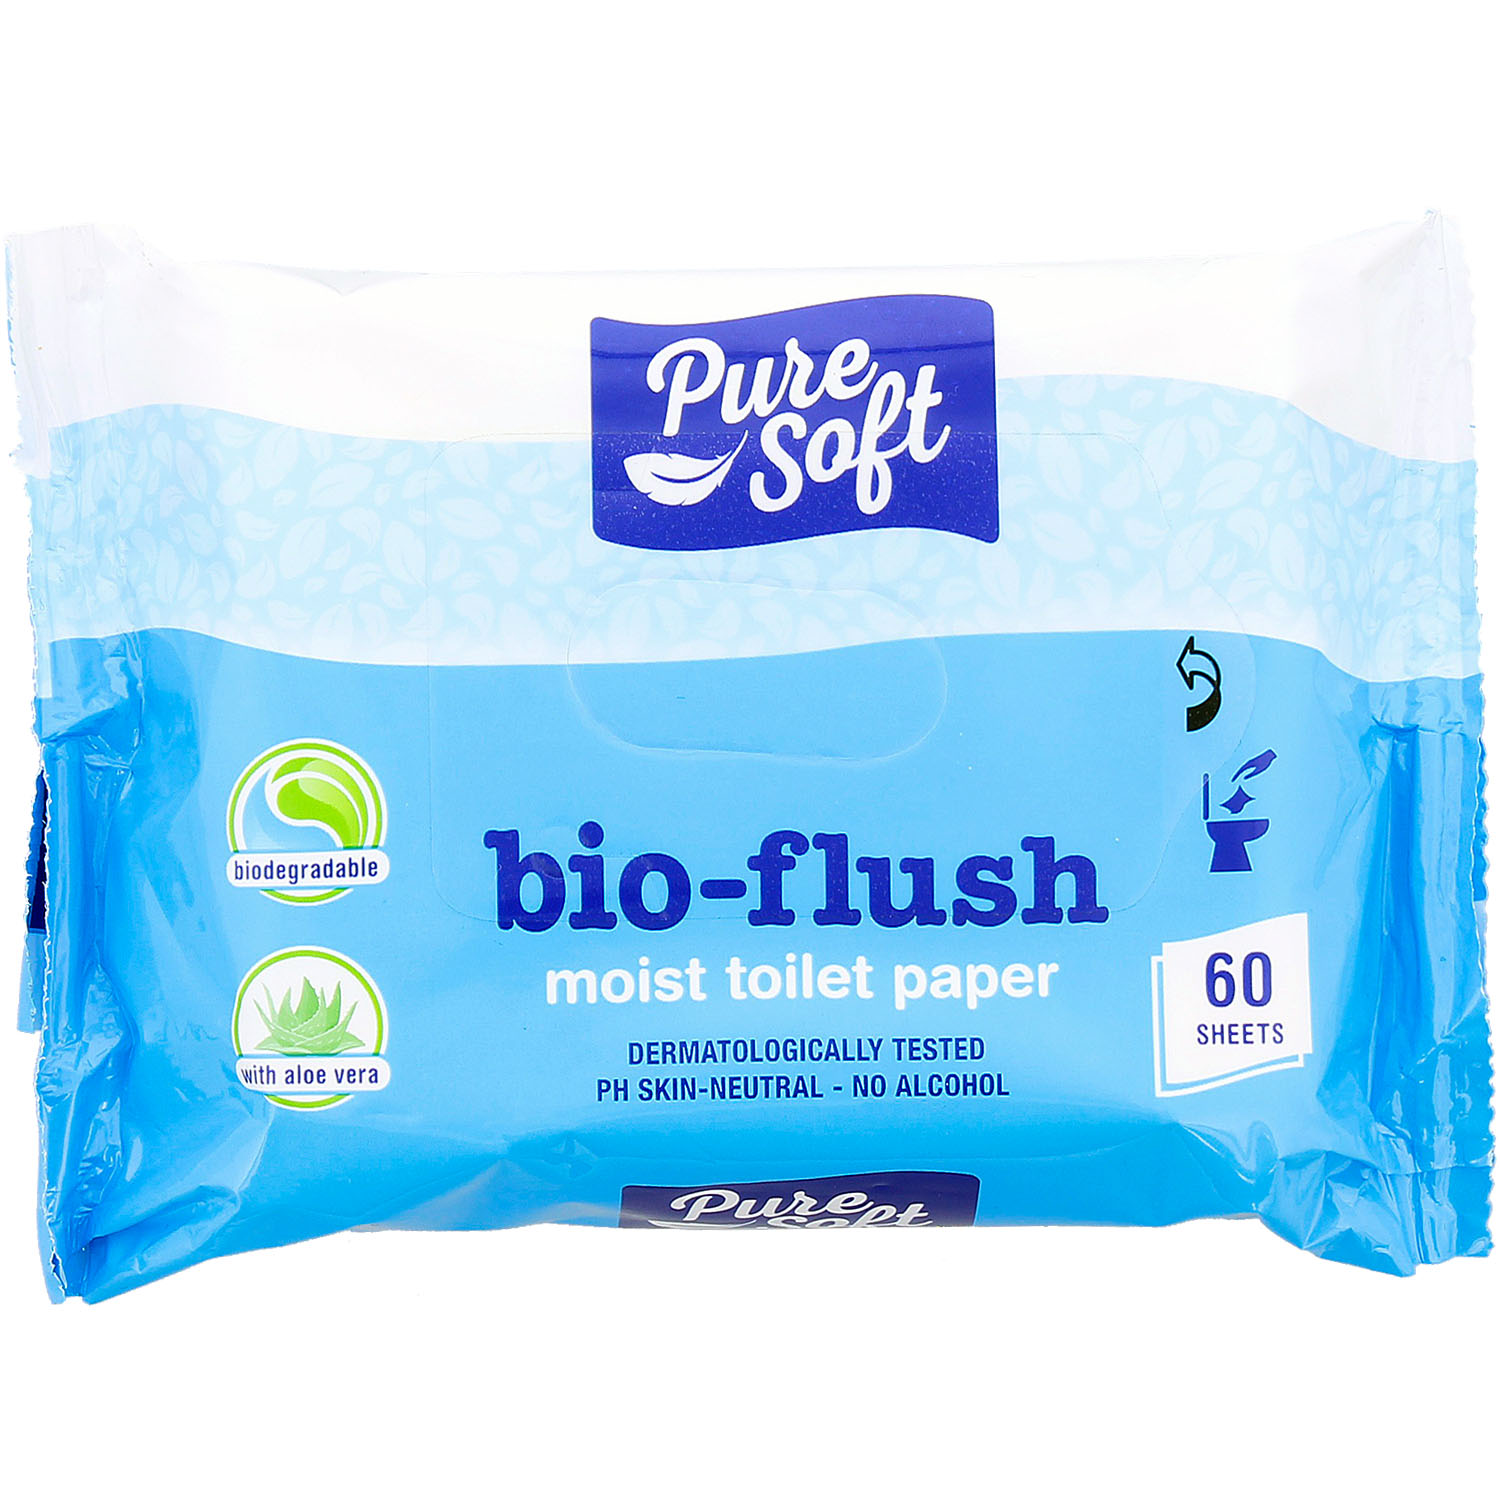 Pure Soft bio-flush feuchtes Toilettenpapier, ohne Alkohol, 60 Blatt/Packung